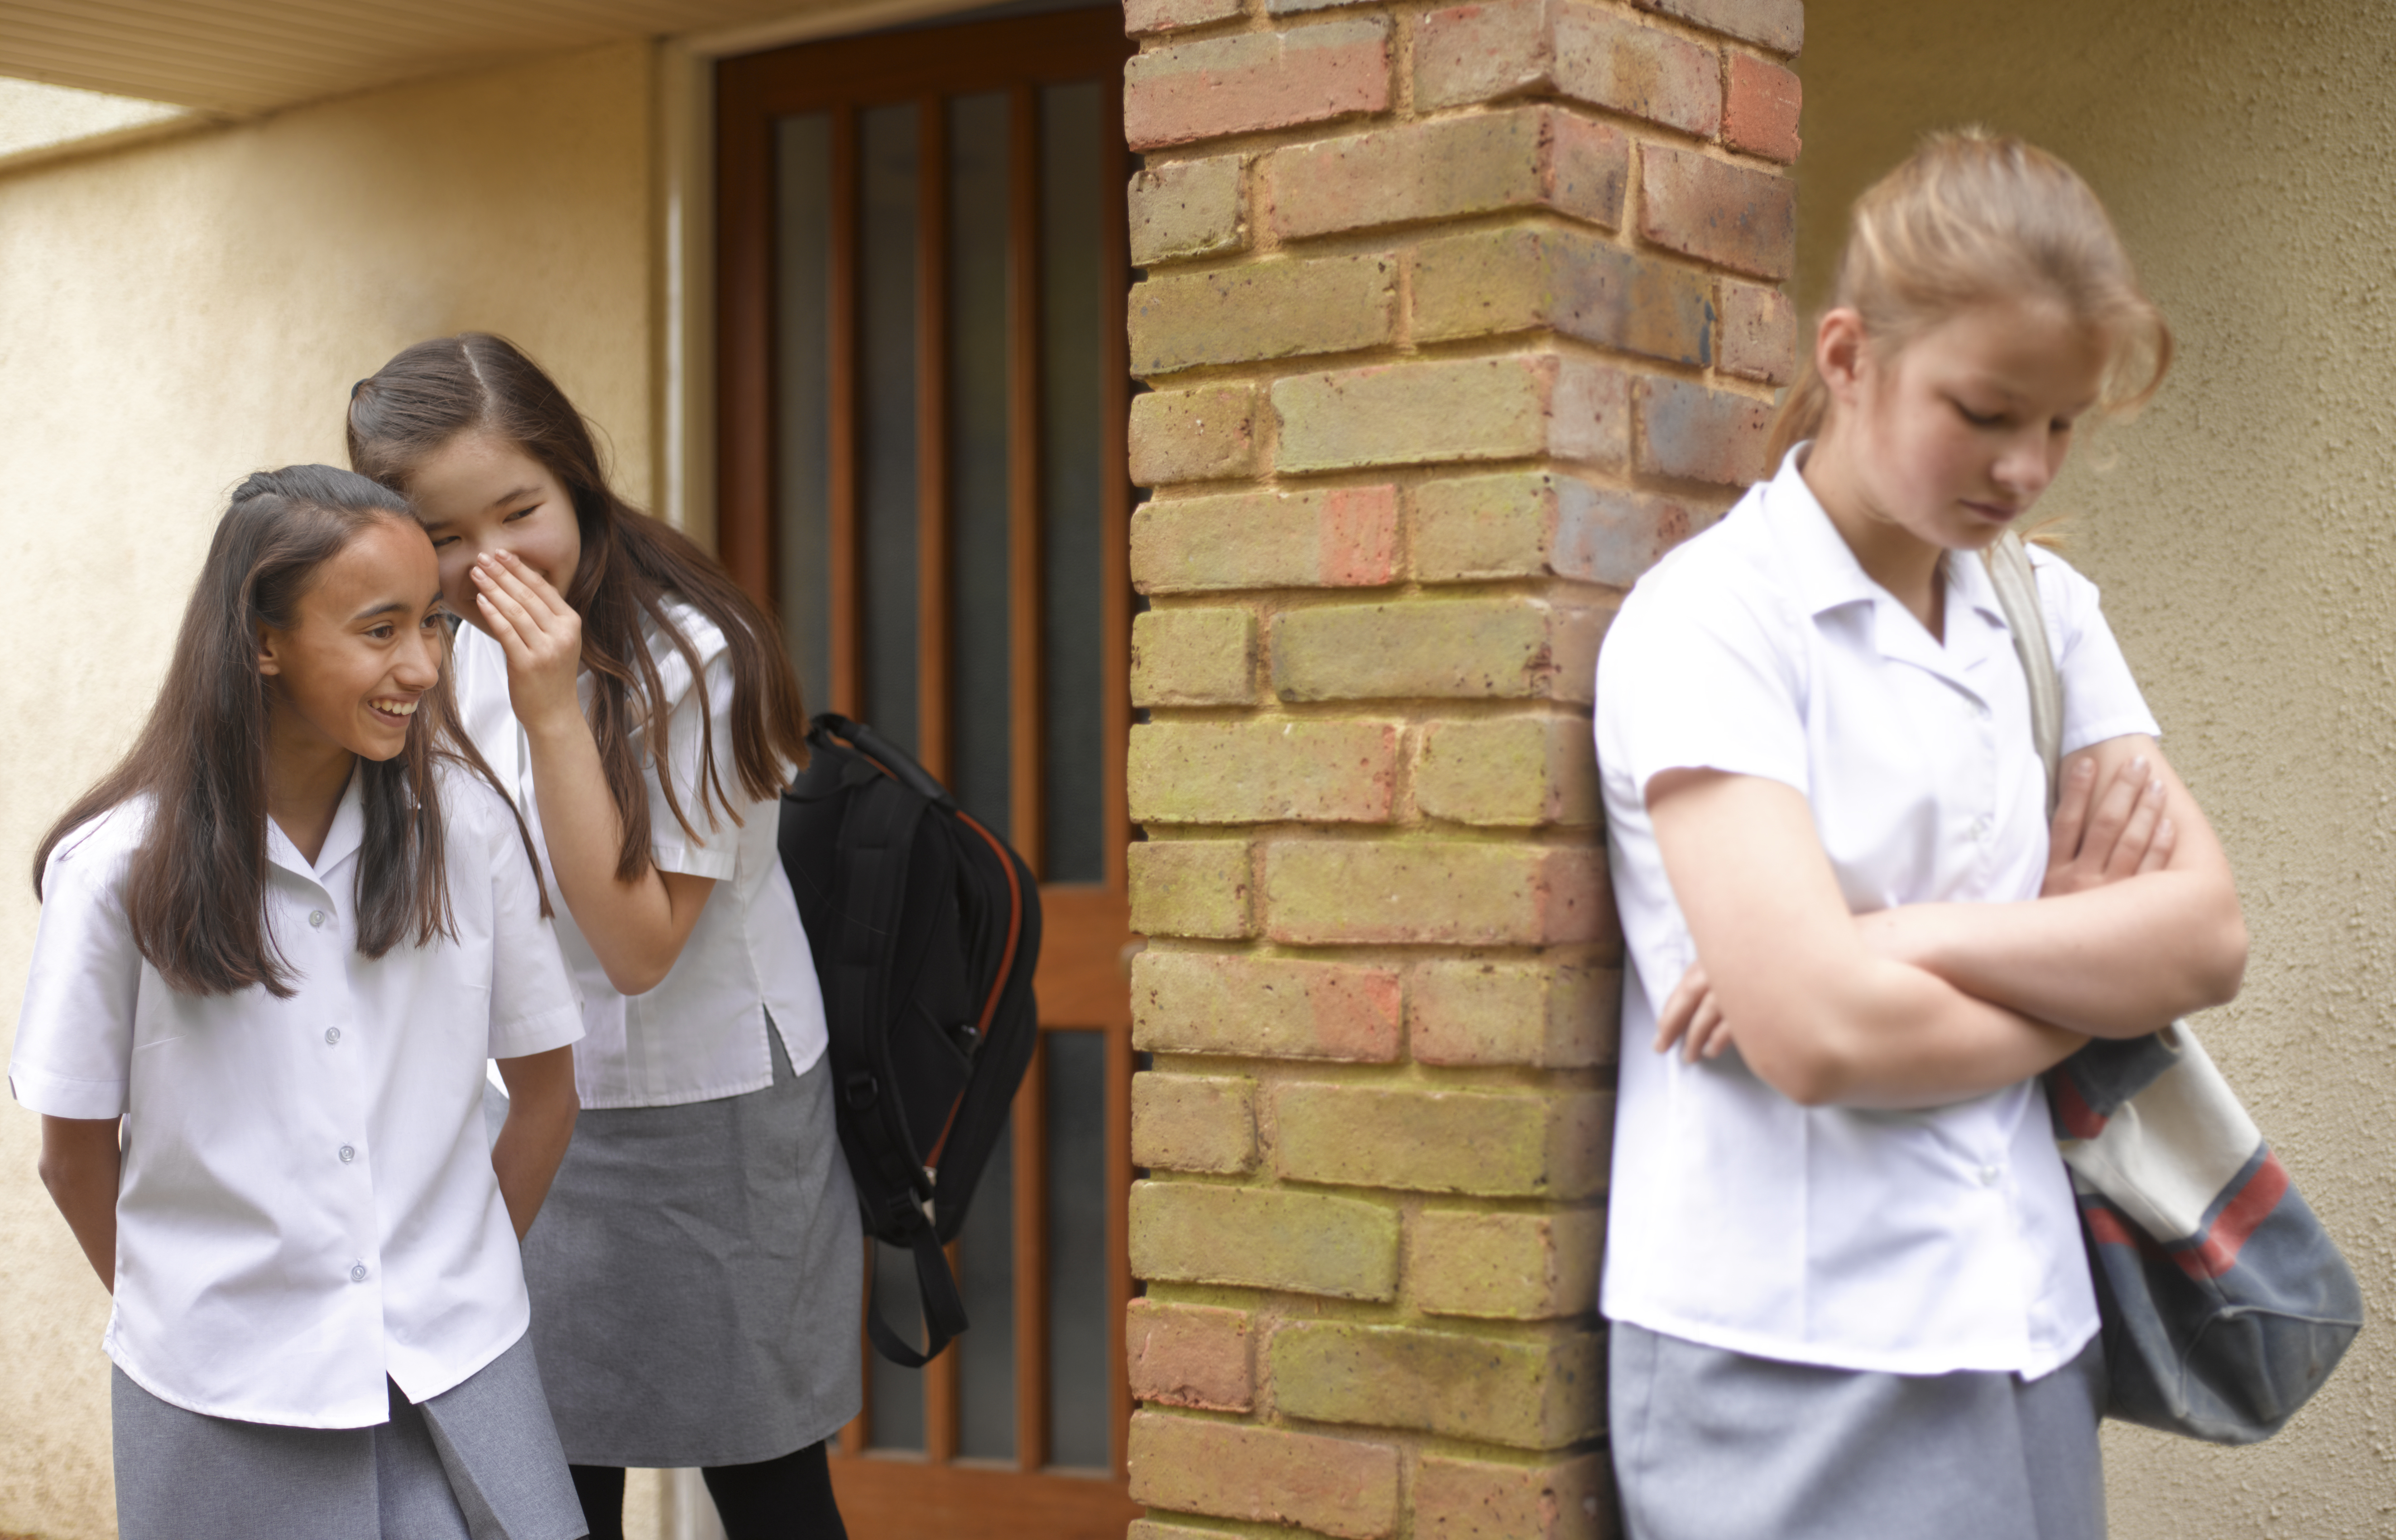 School girls bullying